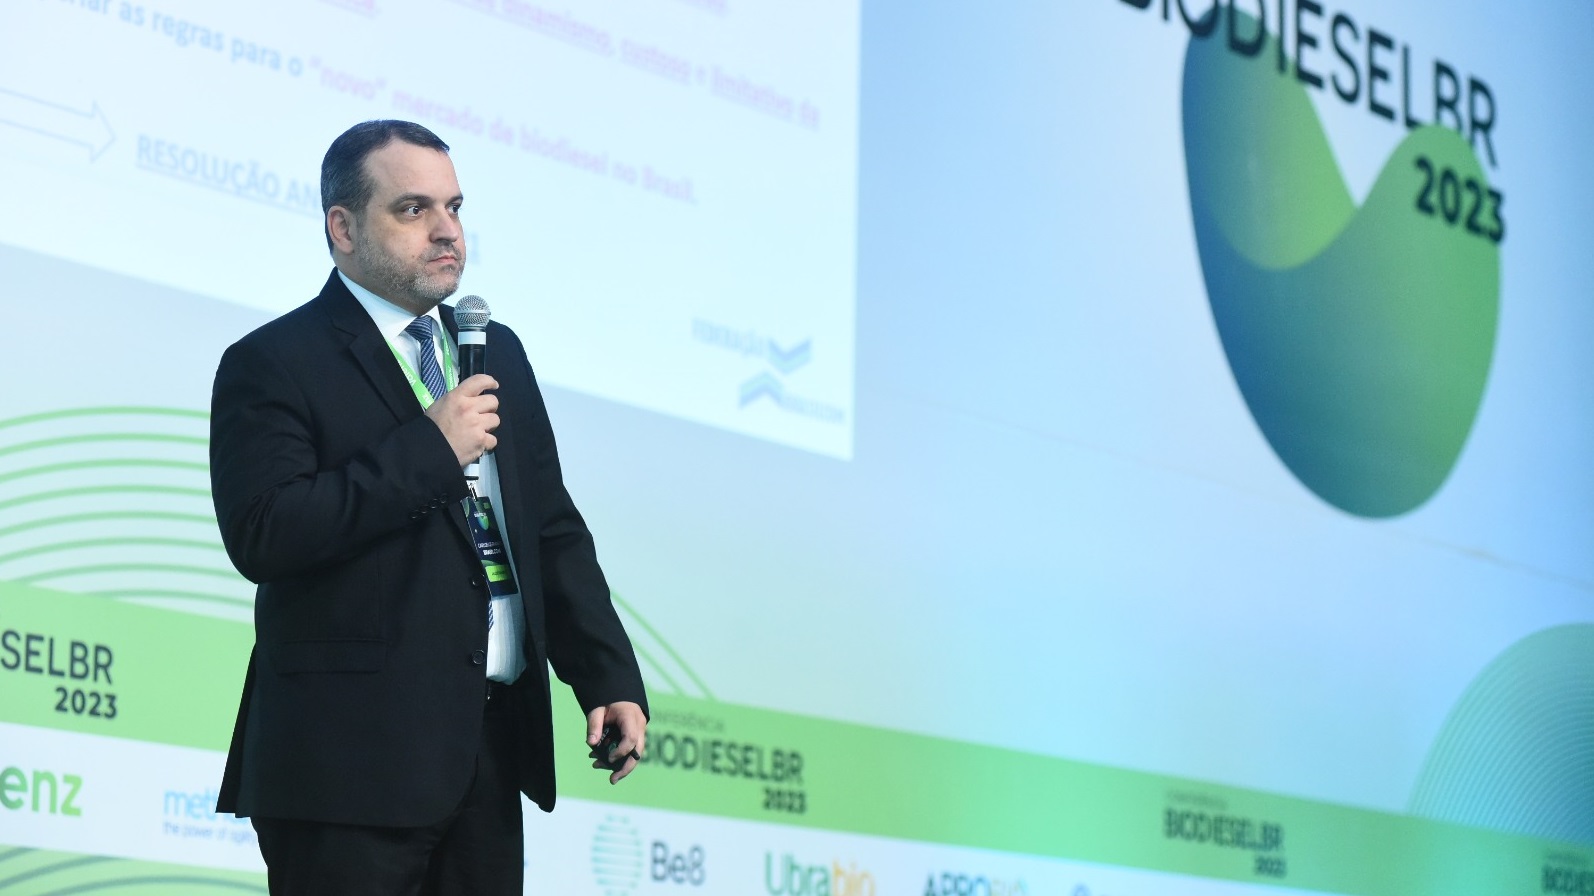 BRASILCOM defende a monofasia tributária durante a Conferência BiodieselBR 2023 (outubro 2023)